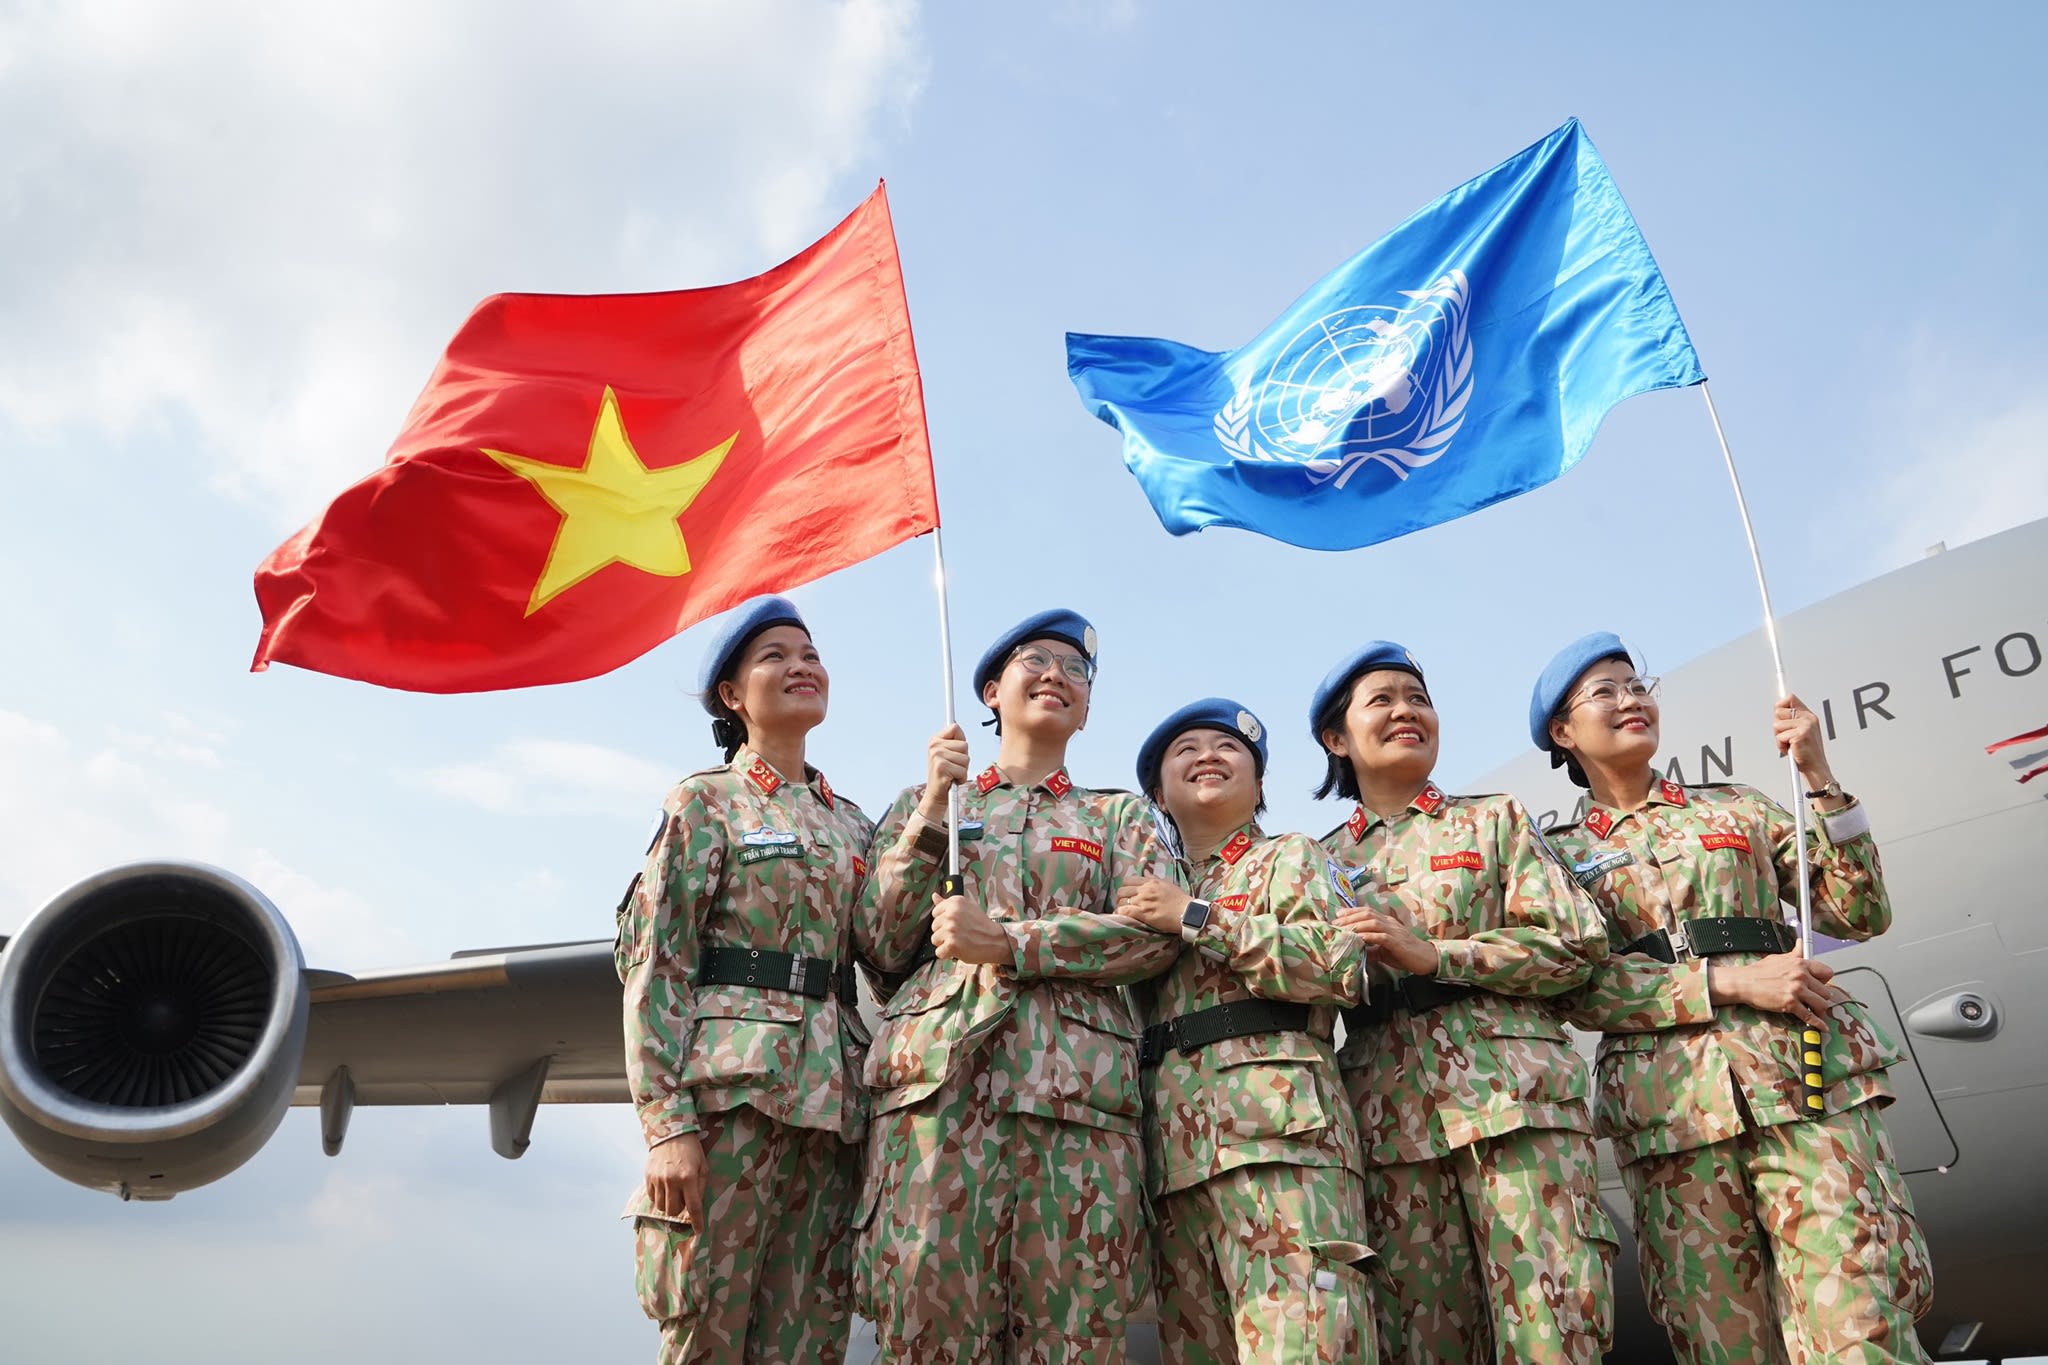 Việc Việt Nam tham gia hoạt động gìn giữ hòa bình của Liên hiệp quốc ghi mốc quan trọng trong tiến trình hội nhập quốc tế và hợp tác với Liên hiệp quốc